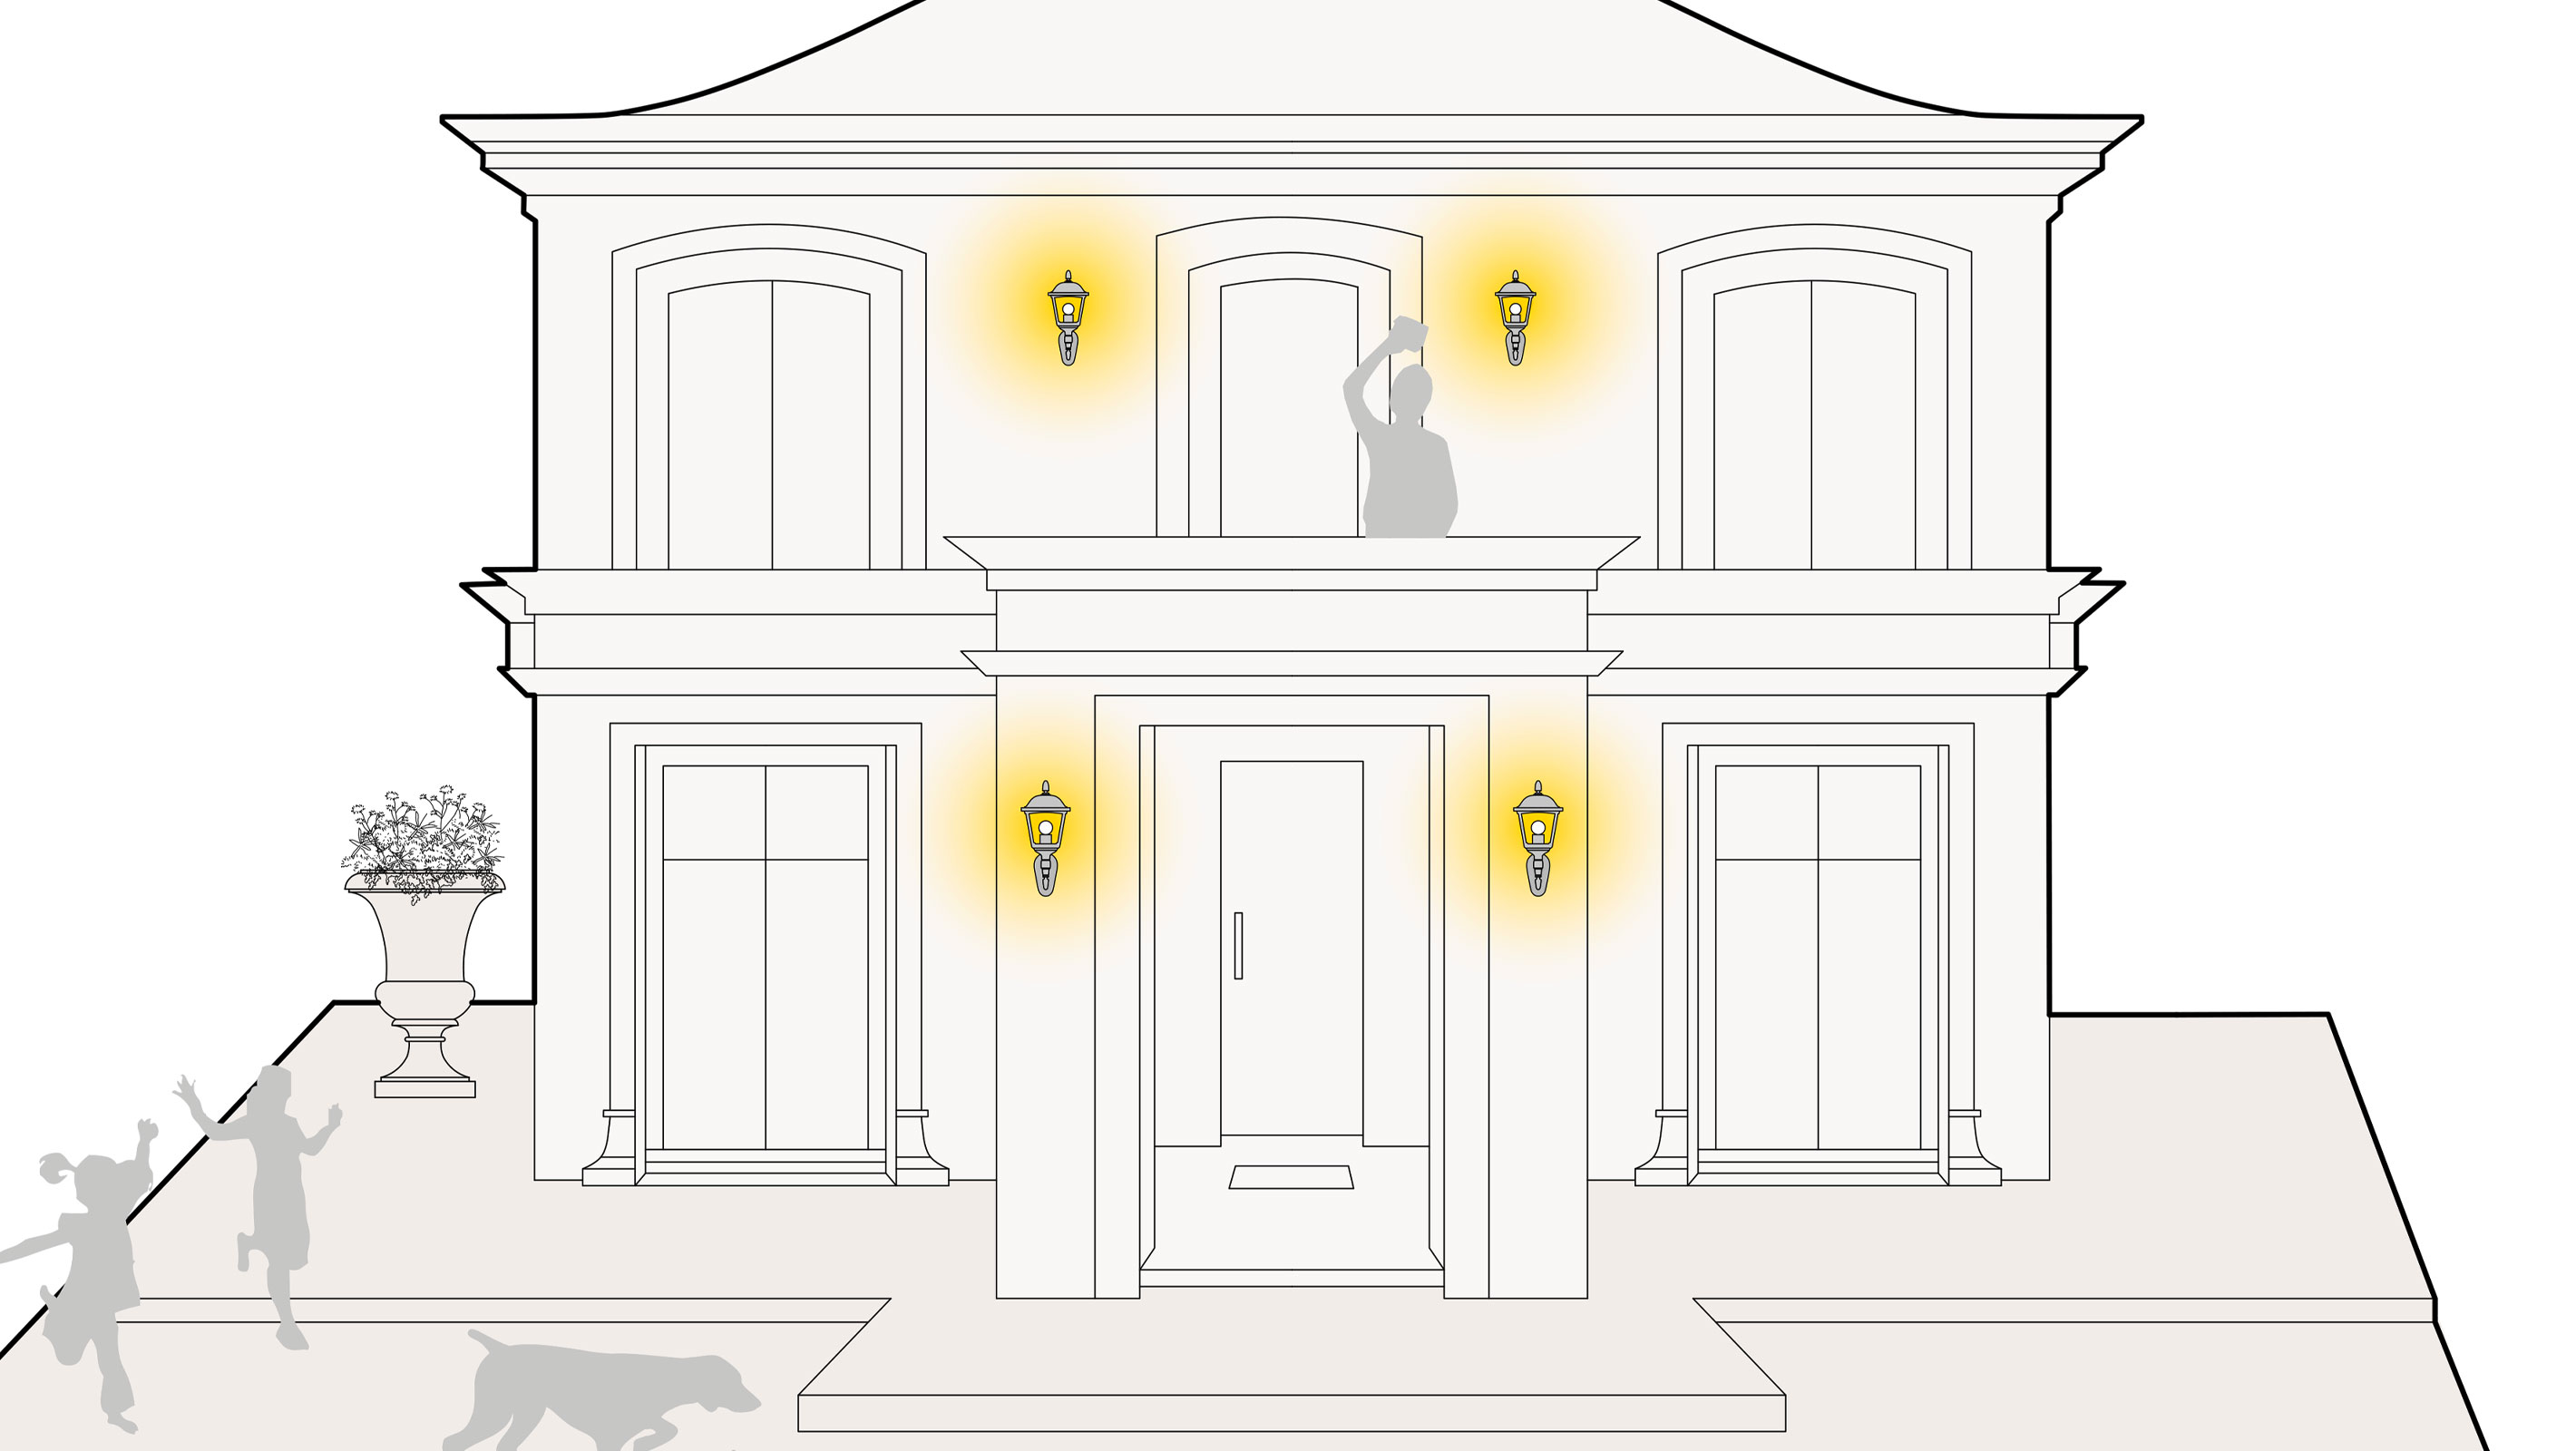 Illustration einer optimalen Lichtplanung an der Fassade eines Hauses mit Wandlaternen